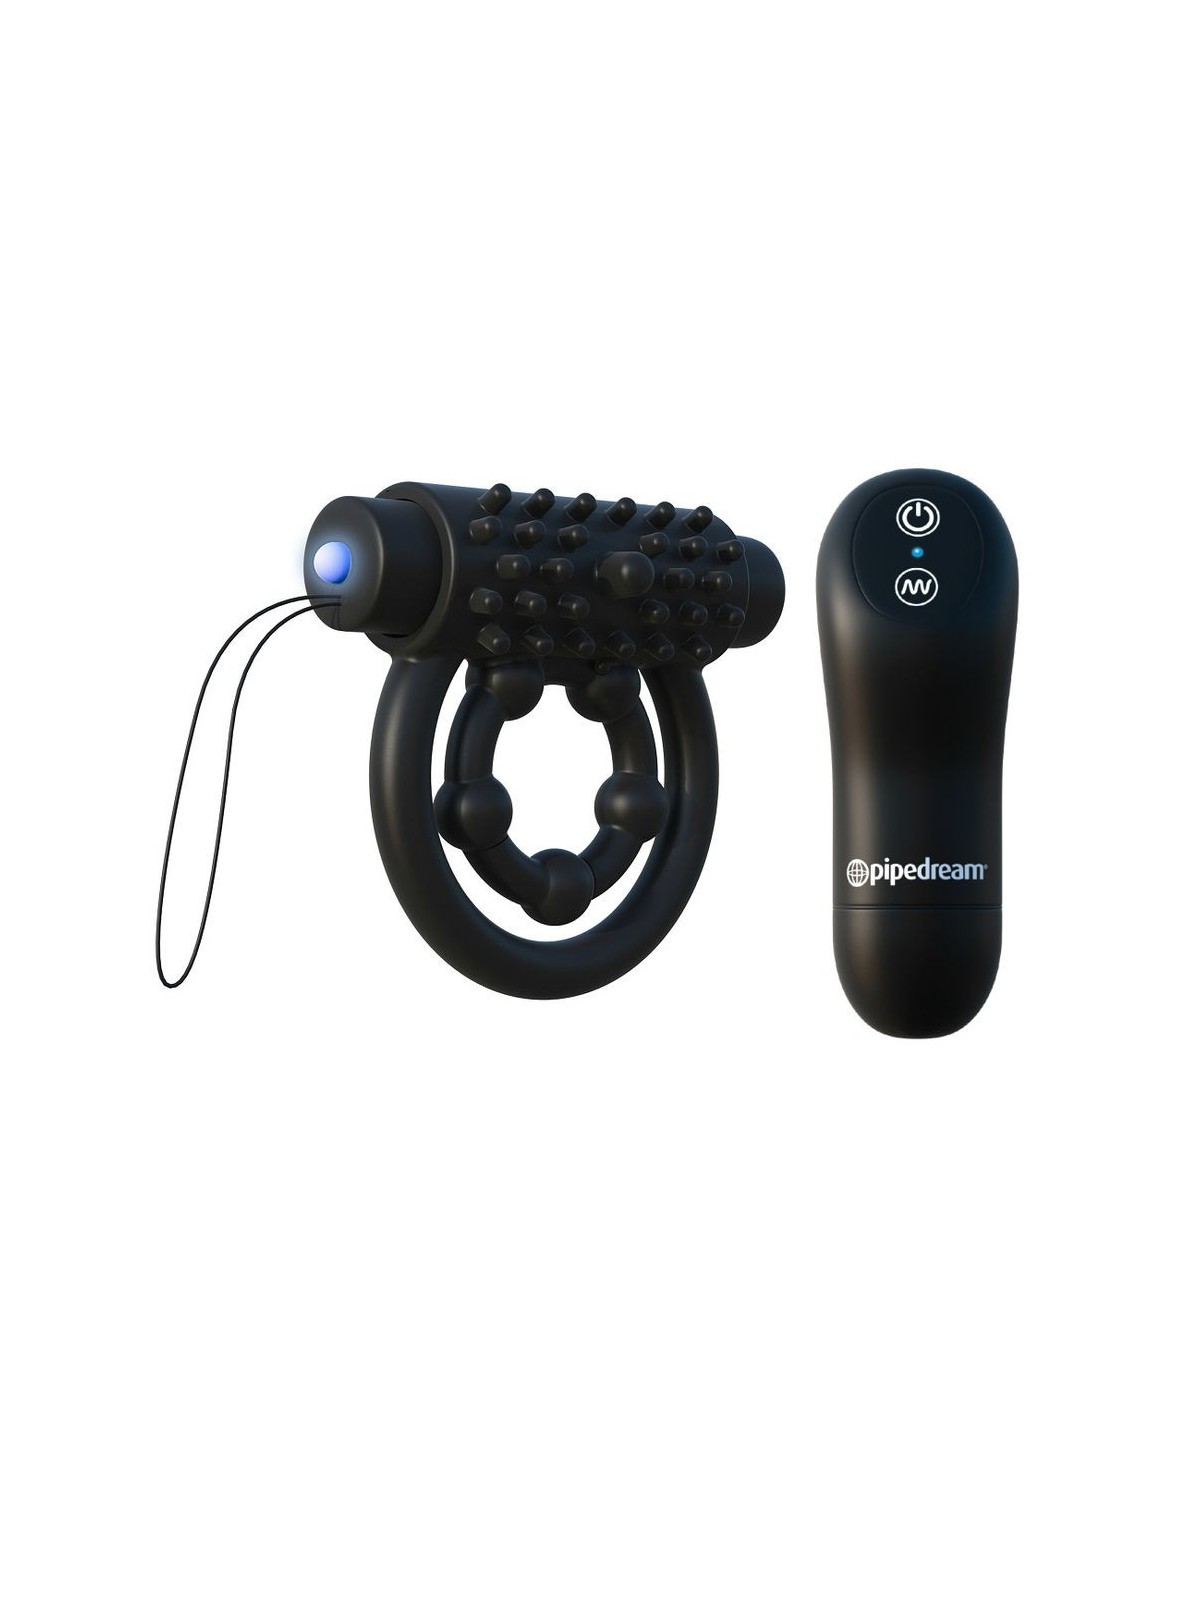 Fantasy C-Ringz Anillo Control Remoto Perforance - Comprar Anillo vibrador pene Fantasy C-Ringz - Anillos vibradores pene (1)